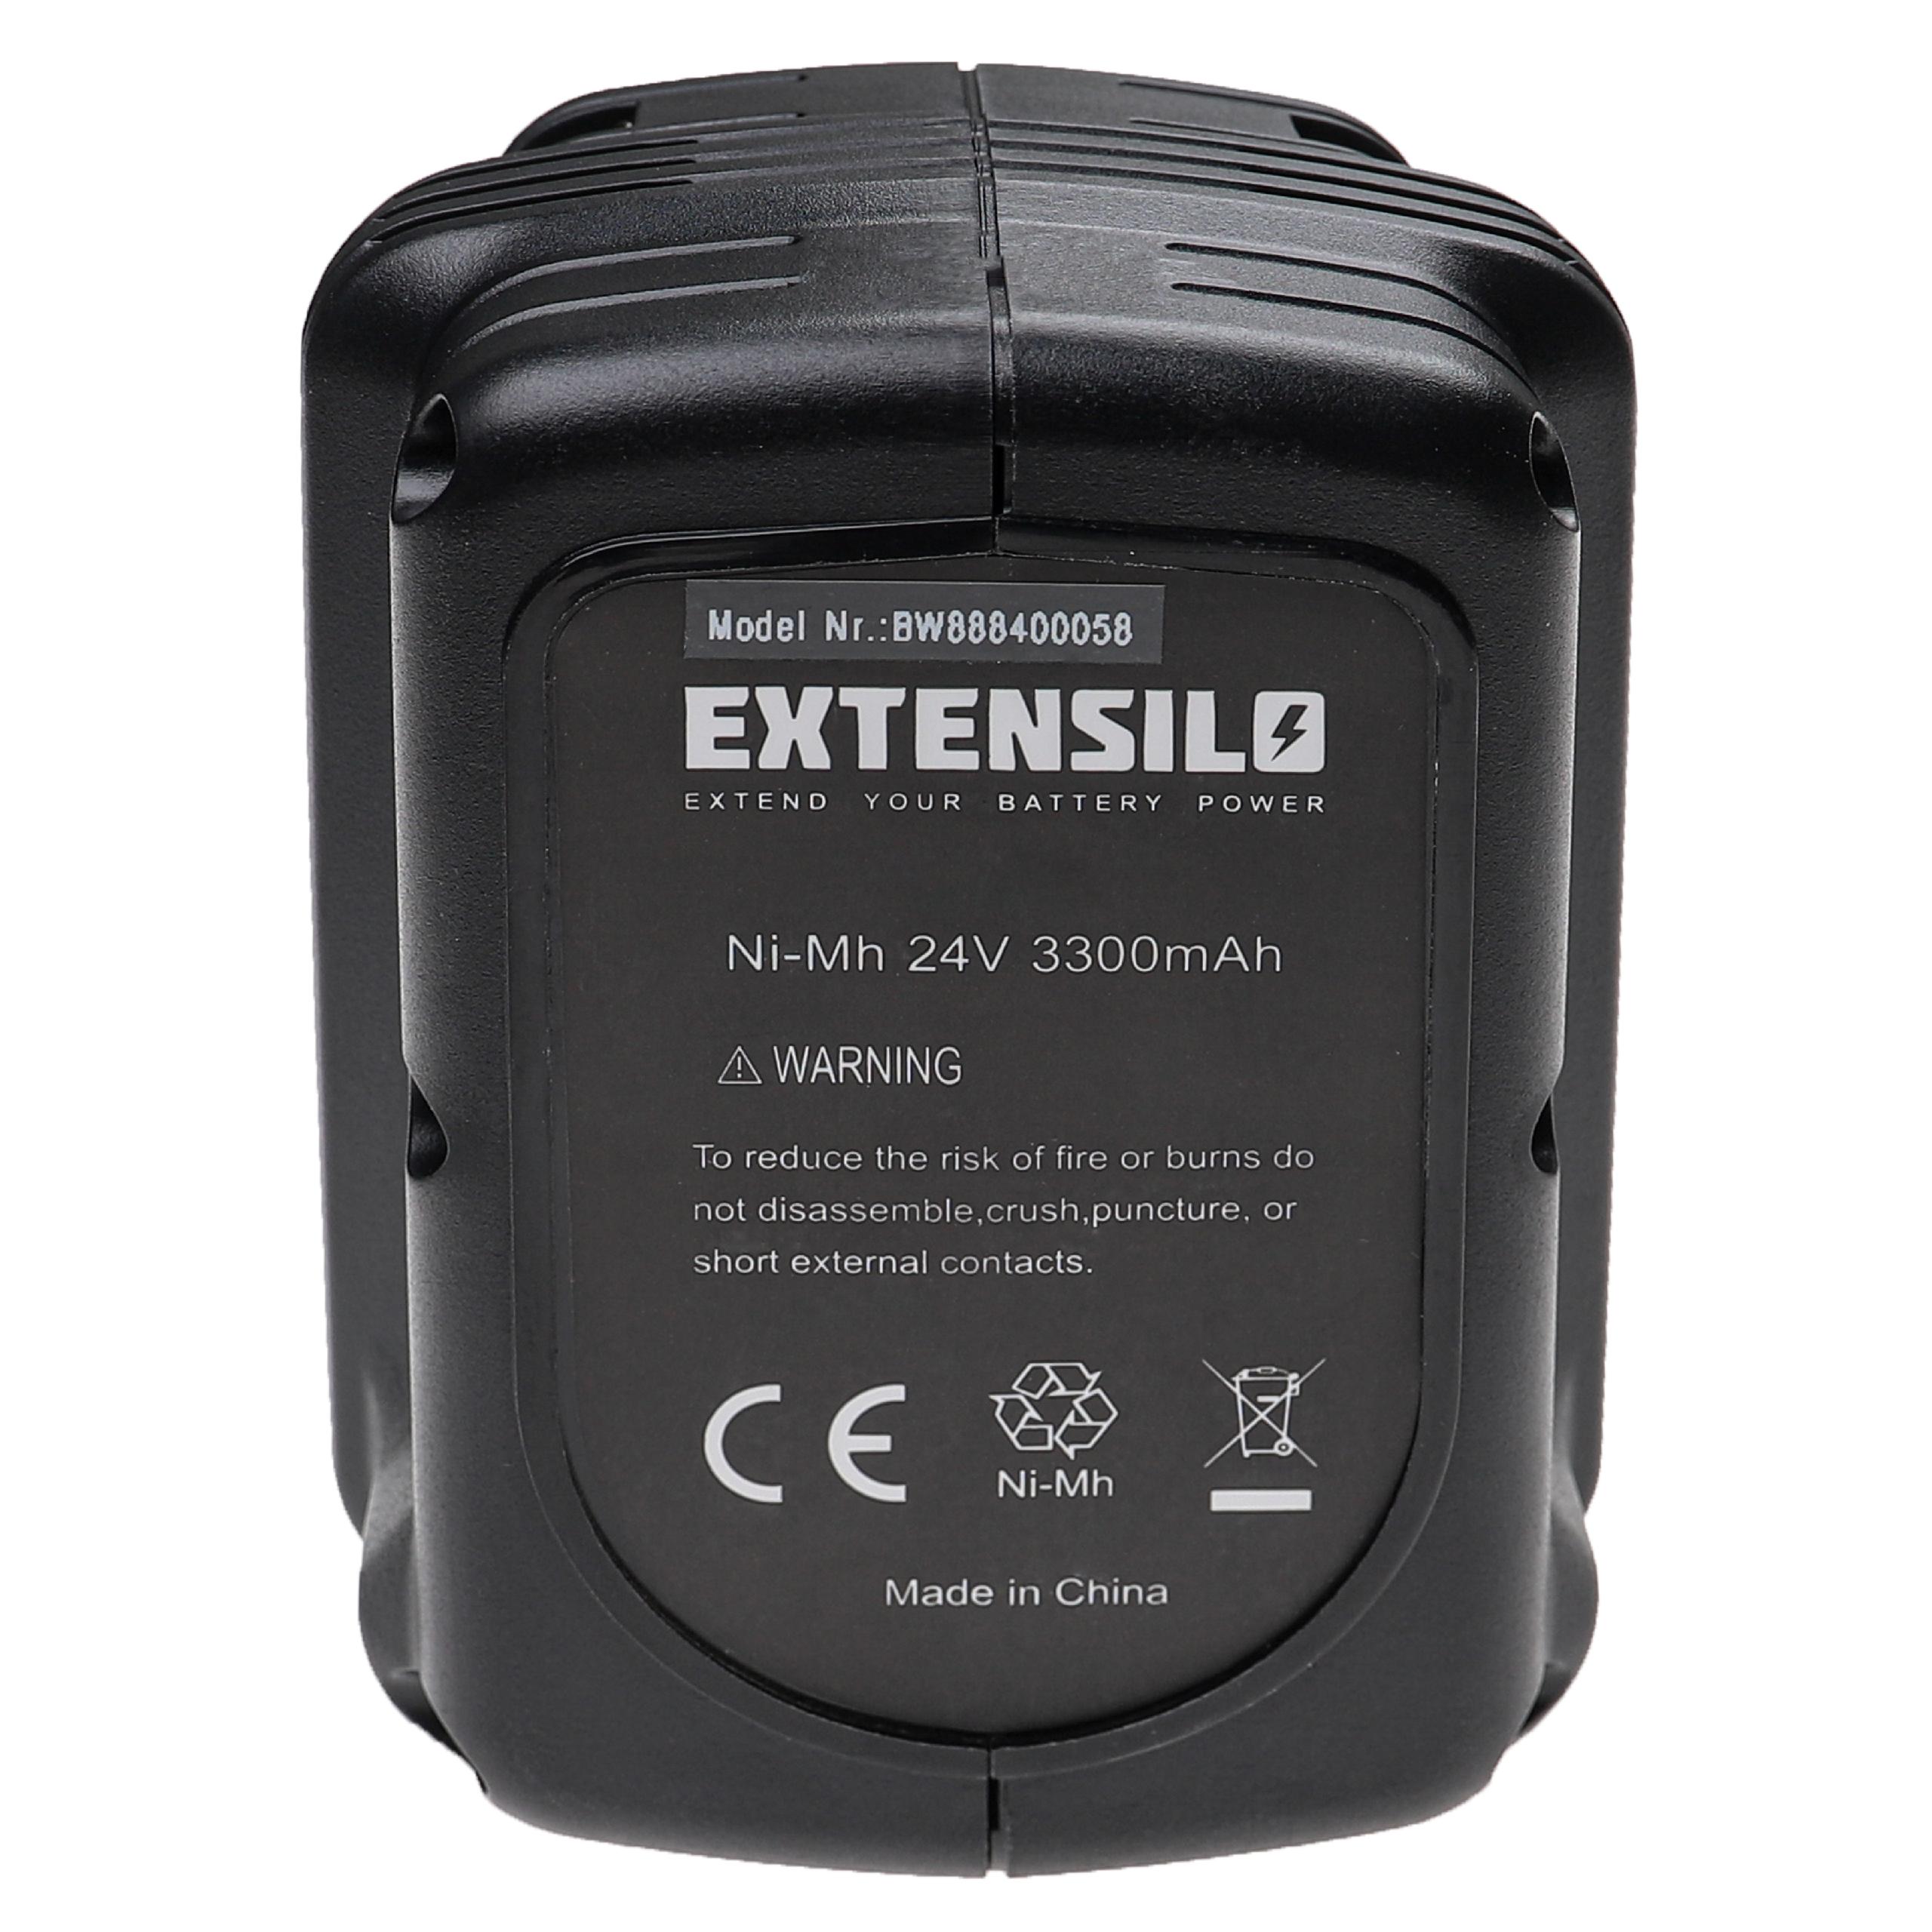 Batteria per attrezzo sostituisce Dewalt DE0240-XJ, DE0240, DE0243, DE0241, DE0243-XJ - 3300 mAh, 24 V, NiMH